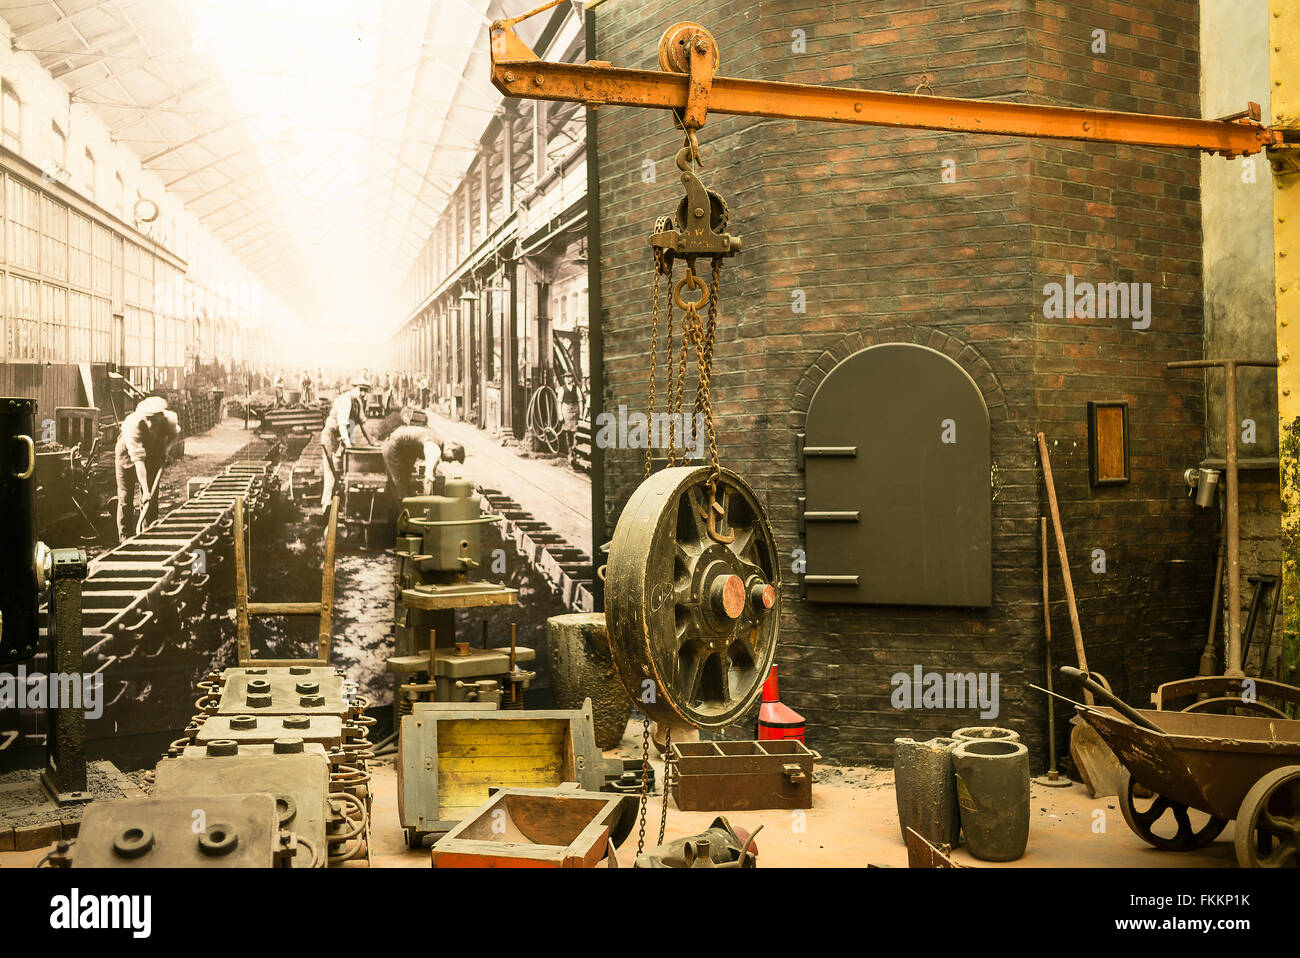 Diarama industrial en Steam Museum en Swindon UK mostrando forja histórica de productos de ingeniería ferroviaria Foto de stock